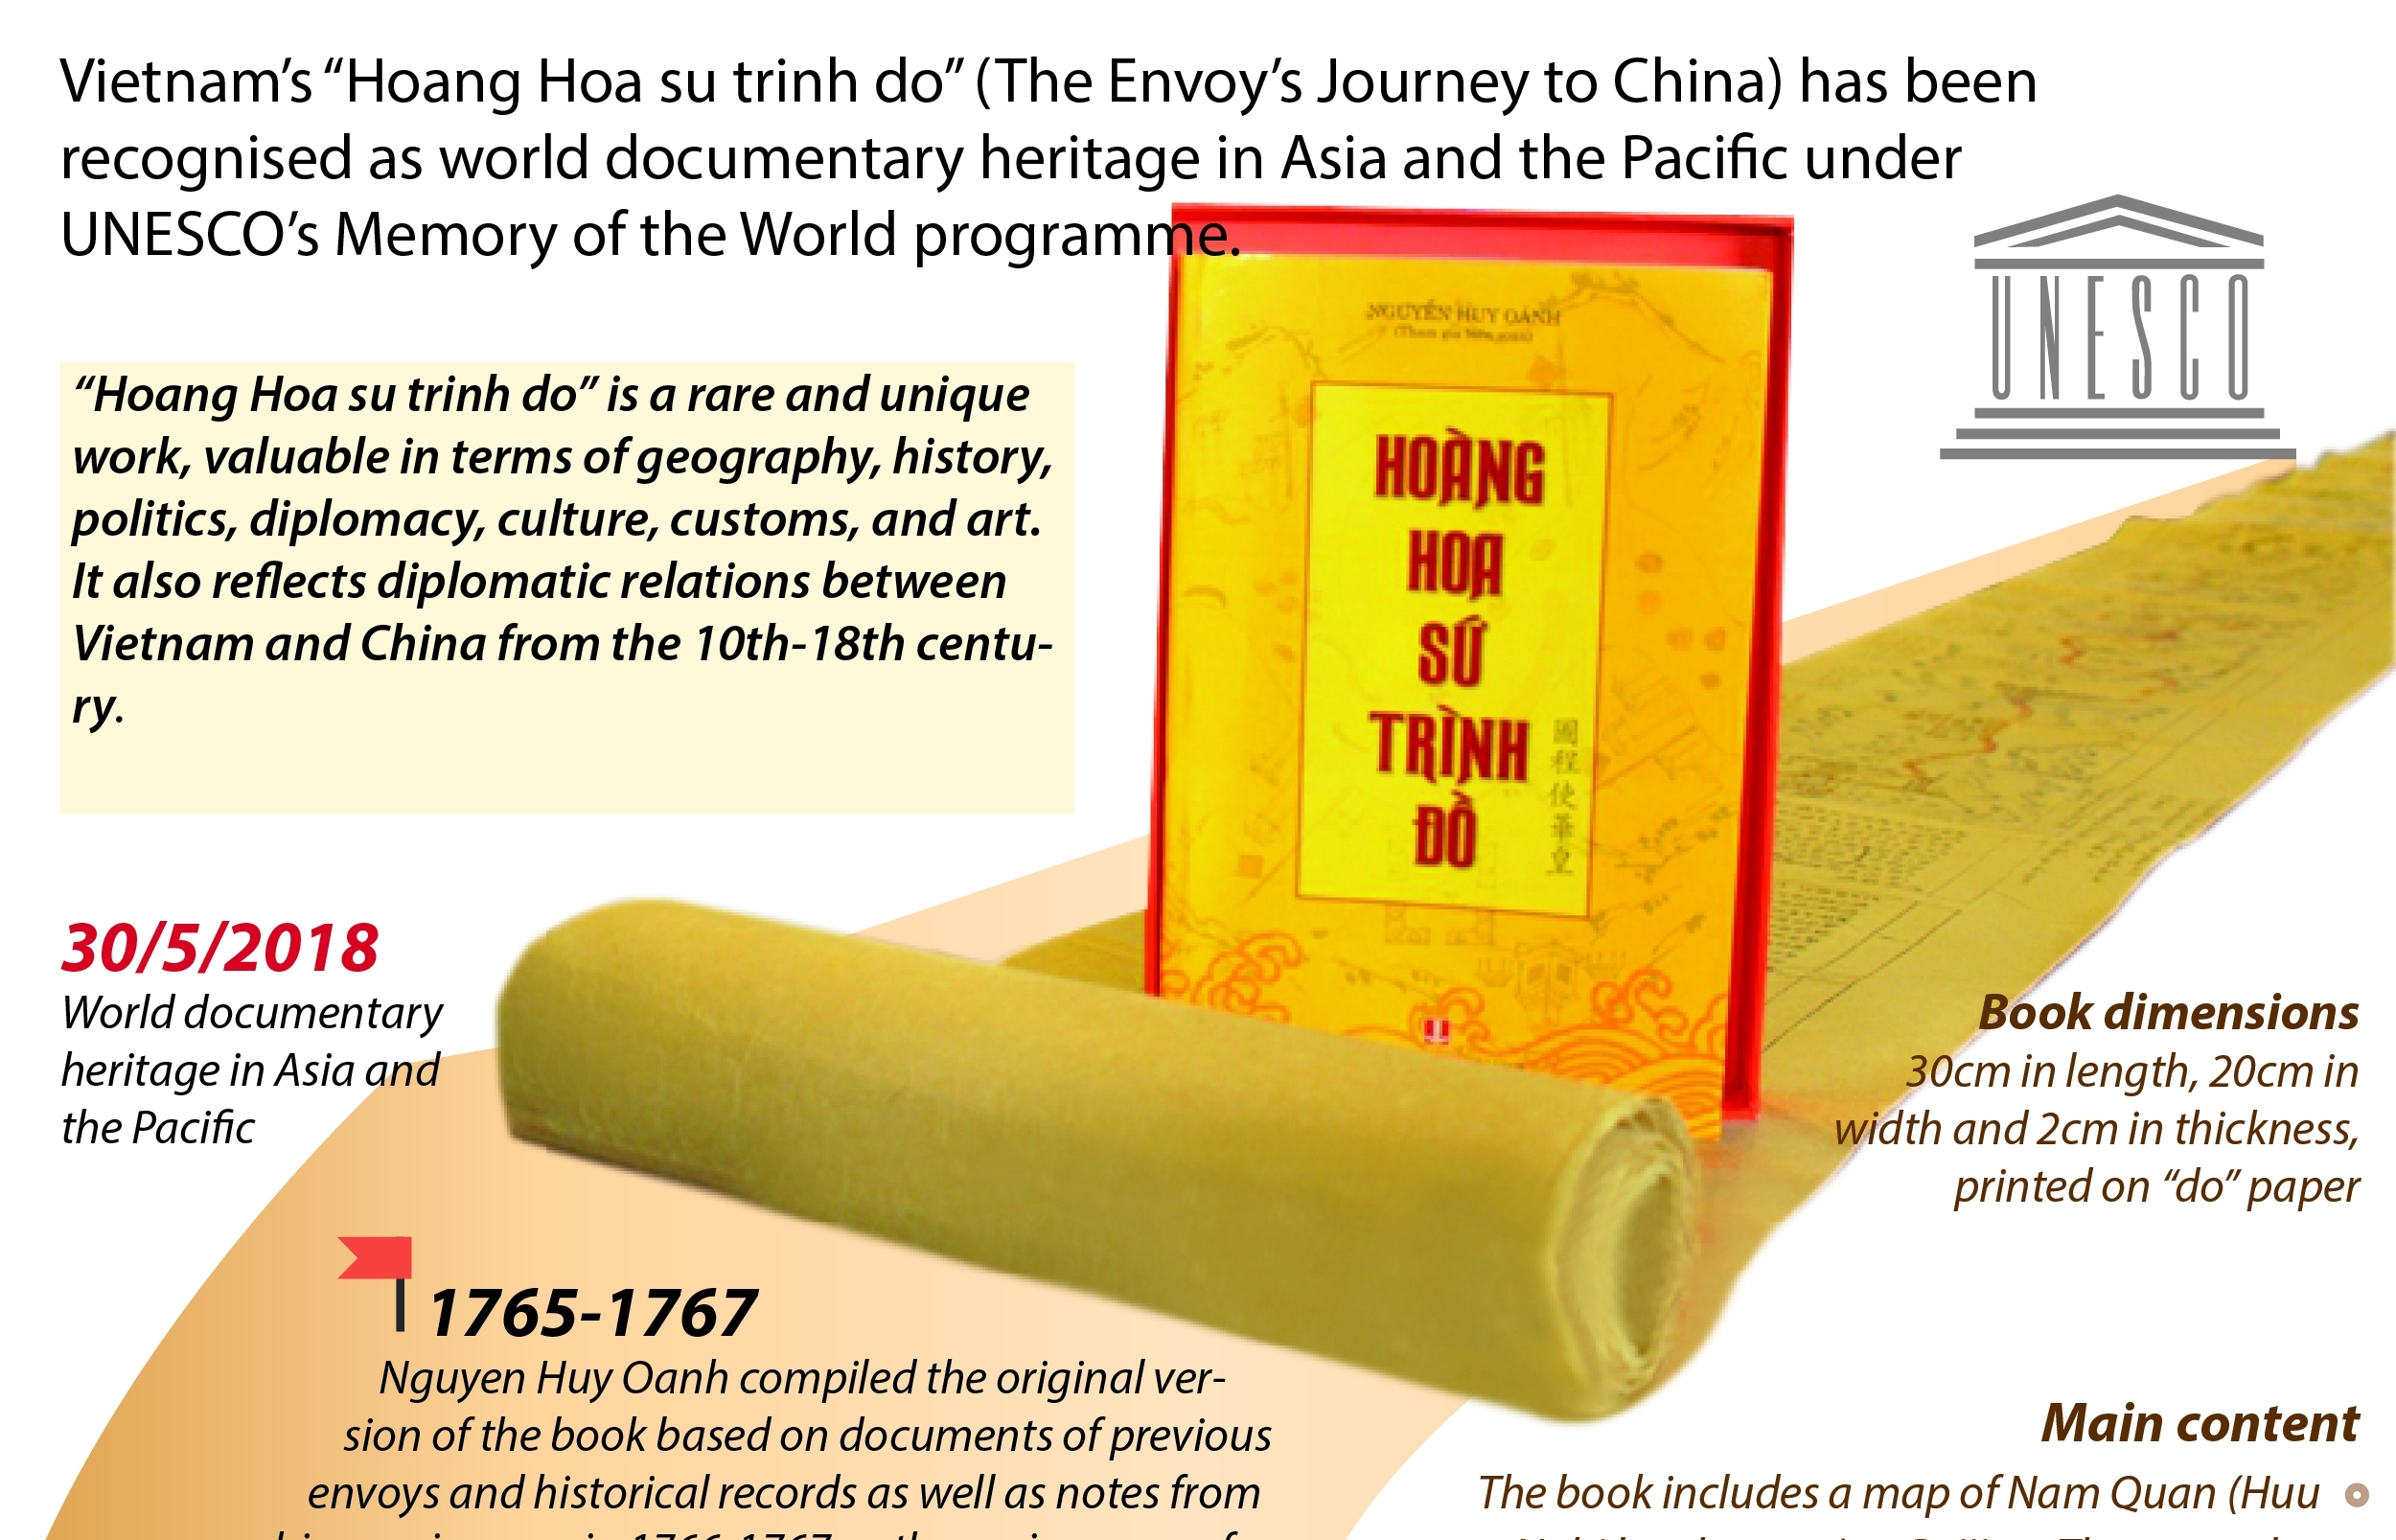 “Hoang Hoa su trinh do” named as UNESCO documentary heritage